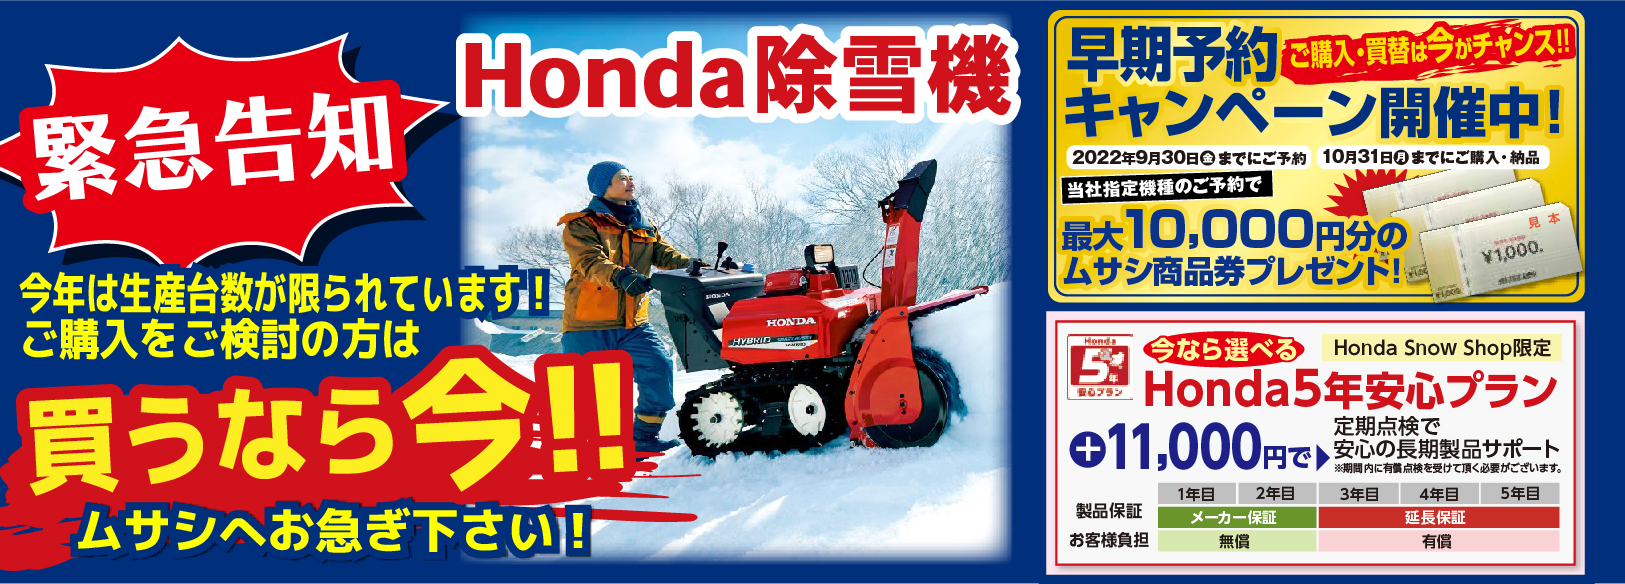 【除雪機をご検討中の方へ】Honda除雪機早期予約キャンペーン